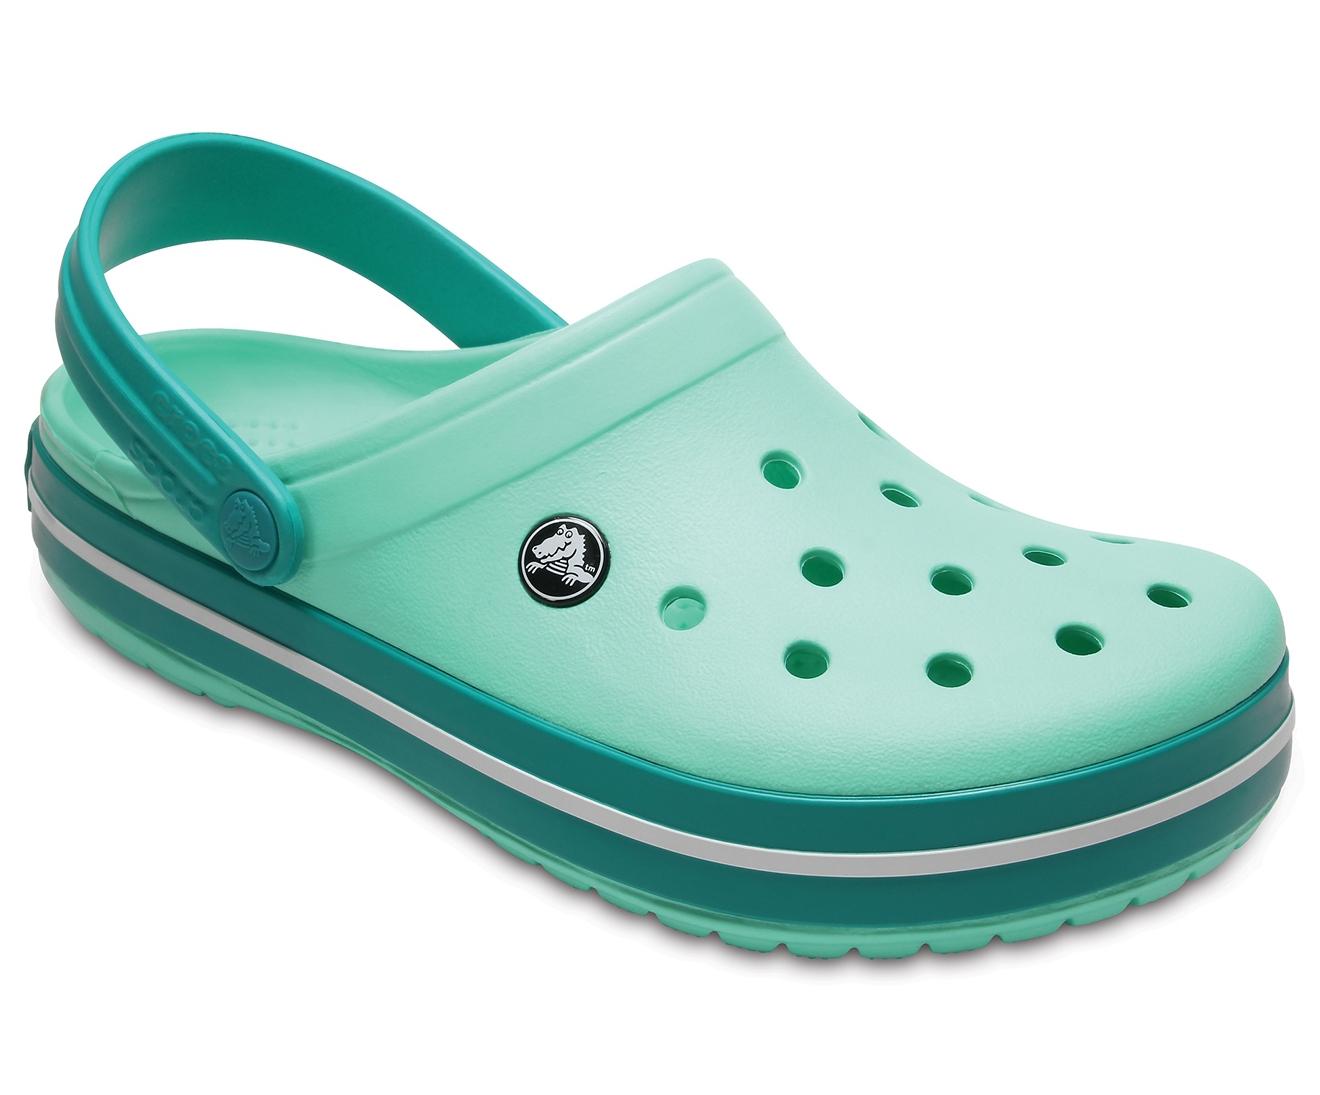 new mint crocs womens